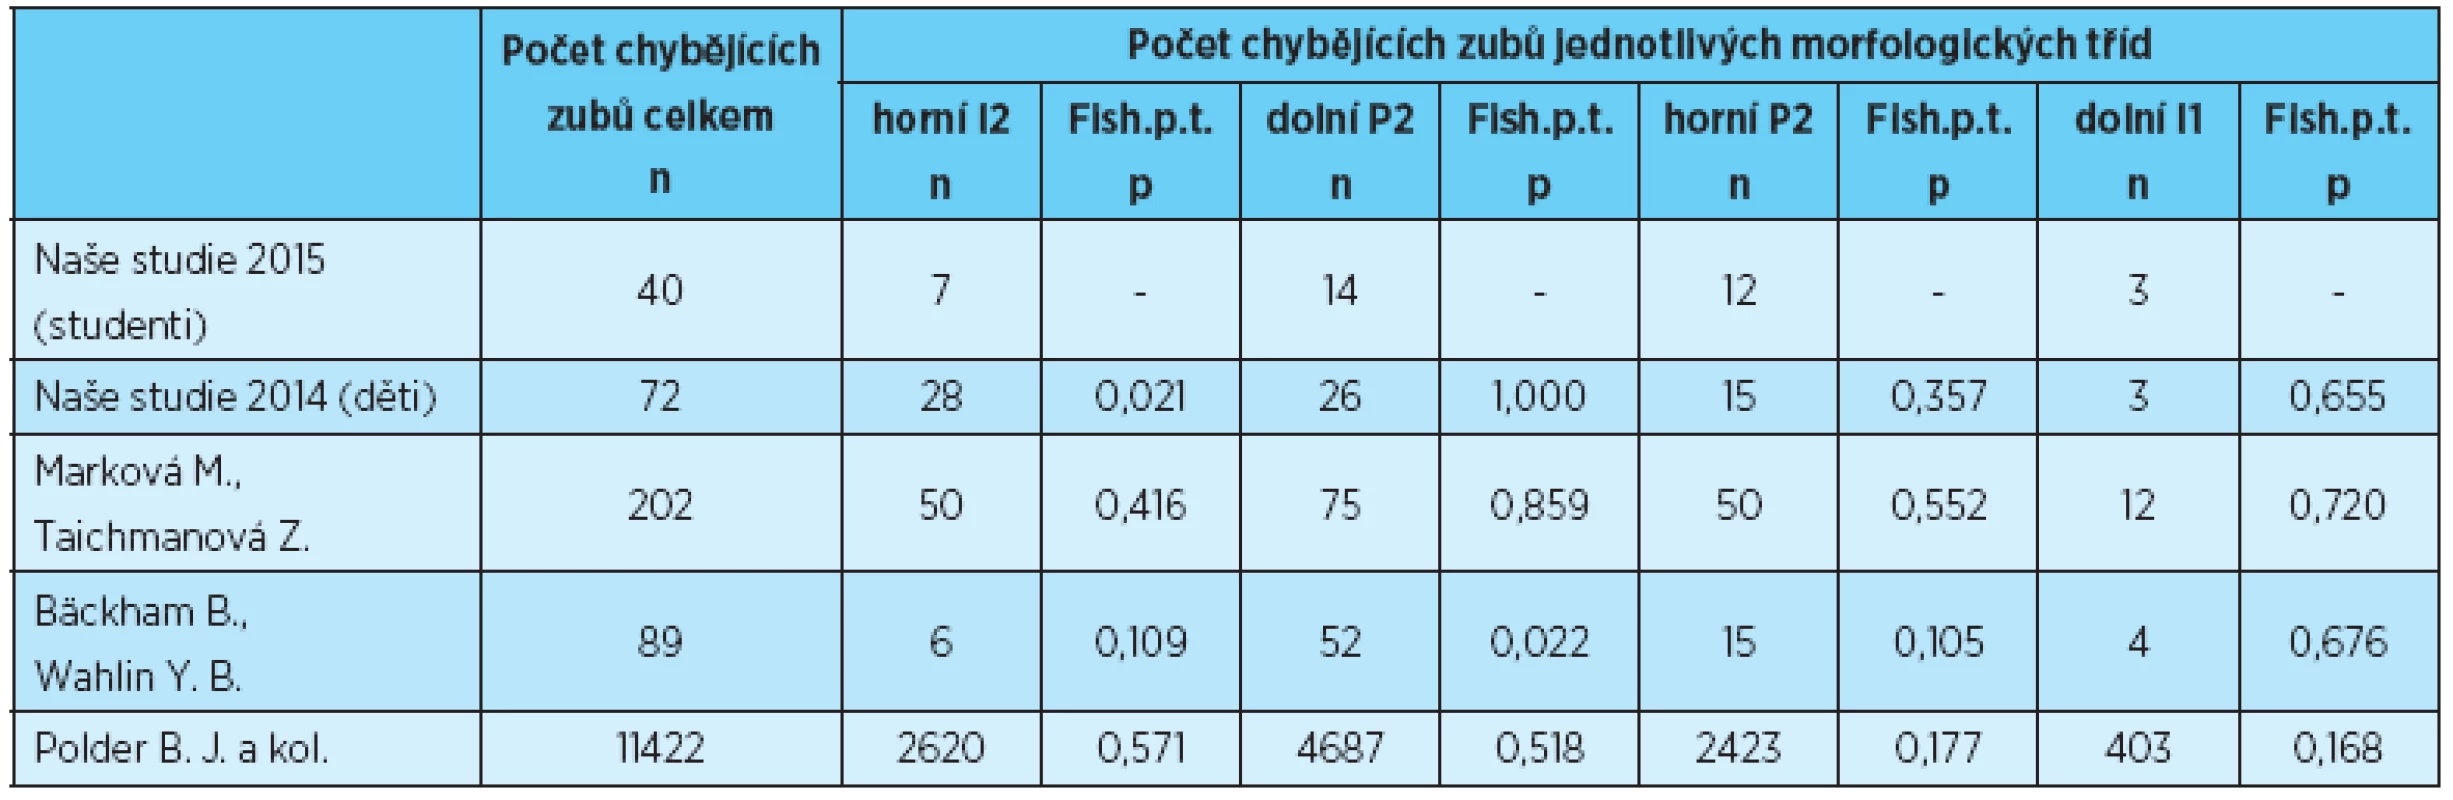 Počet chybějících zubů jednotlivých morfologických tříd, porovnání s výsledky uvedenými v literatuře [1, 2, 3, 4]